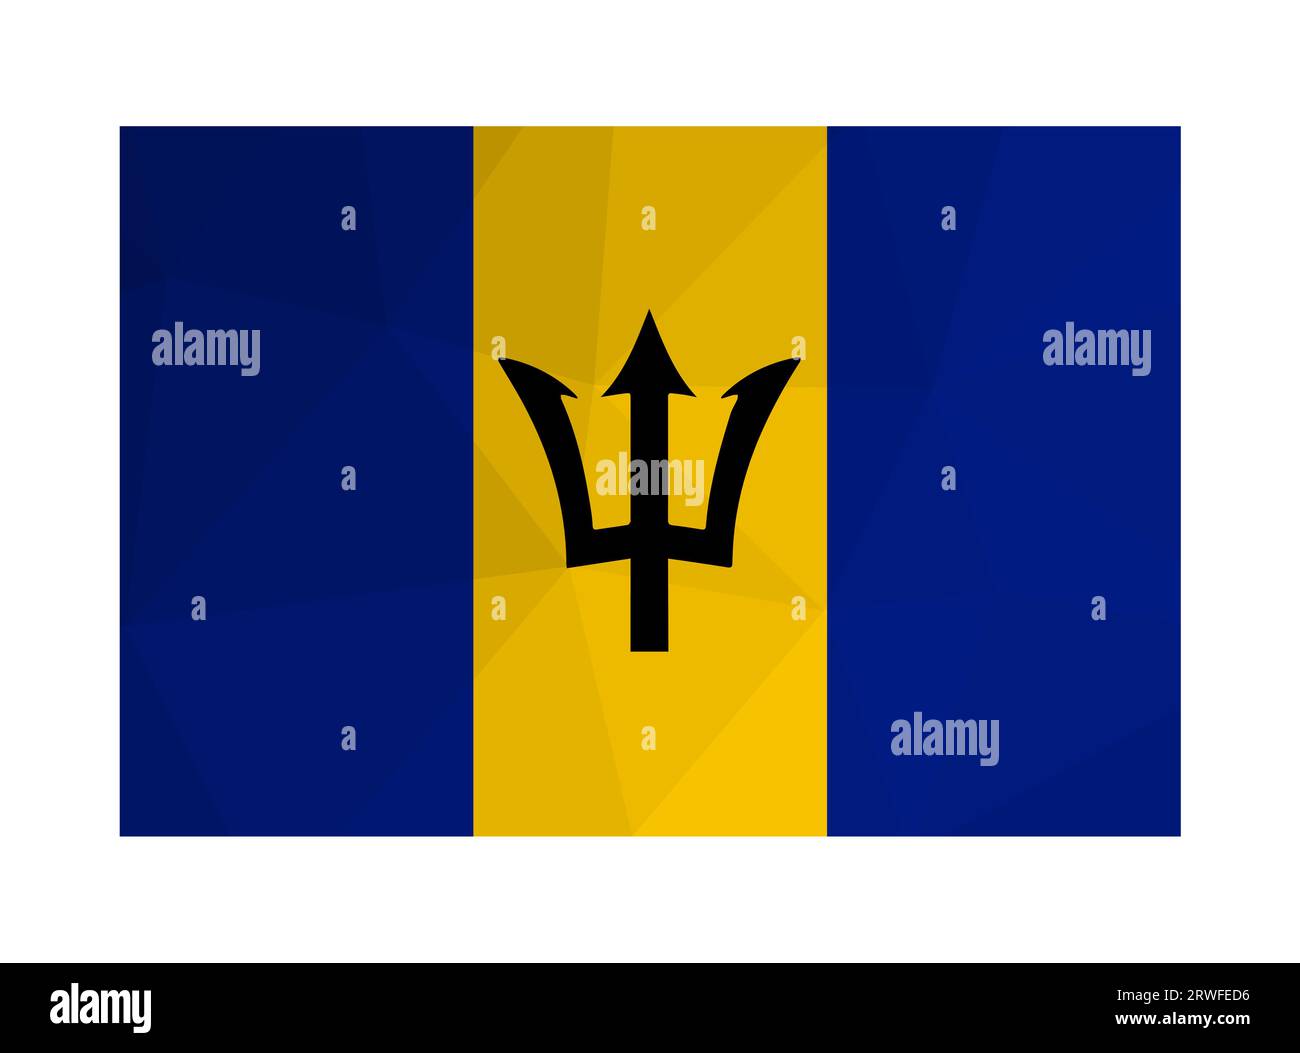 Vektor-isolierte Abbildung. Nationalflagge barbados mit schwarzem Dreizackenkopf, blauen und gelben Streifen. Offizielles Symbol von Barbados. Kreatives Design i Stock Vektor